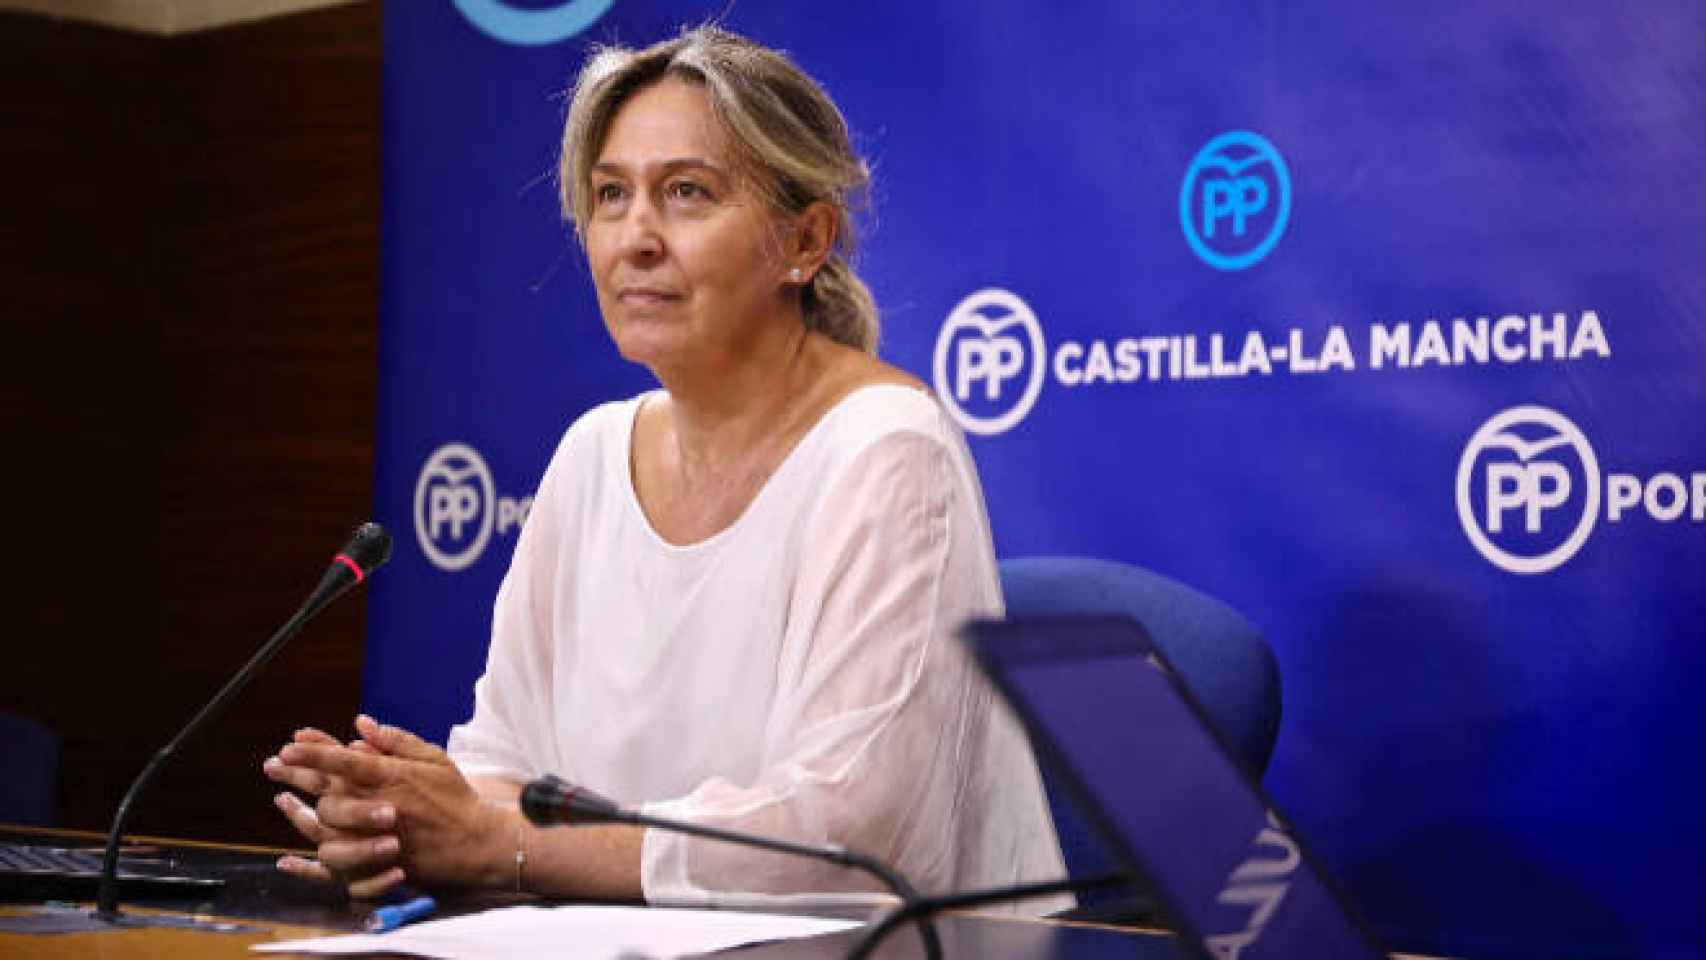 Diputada regional del PP, Ana Guarinos